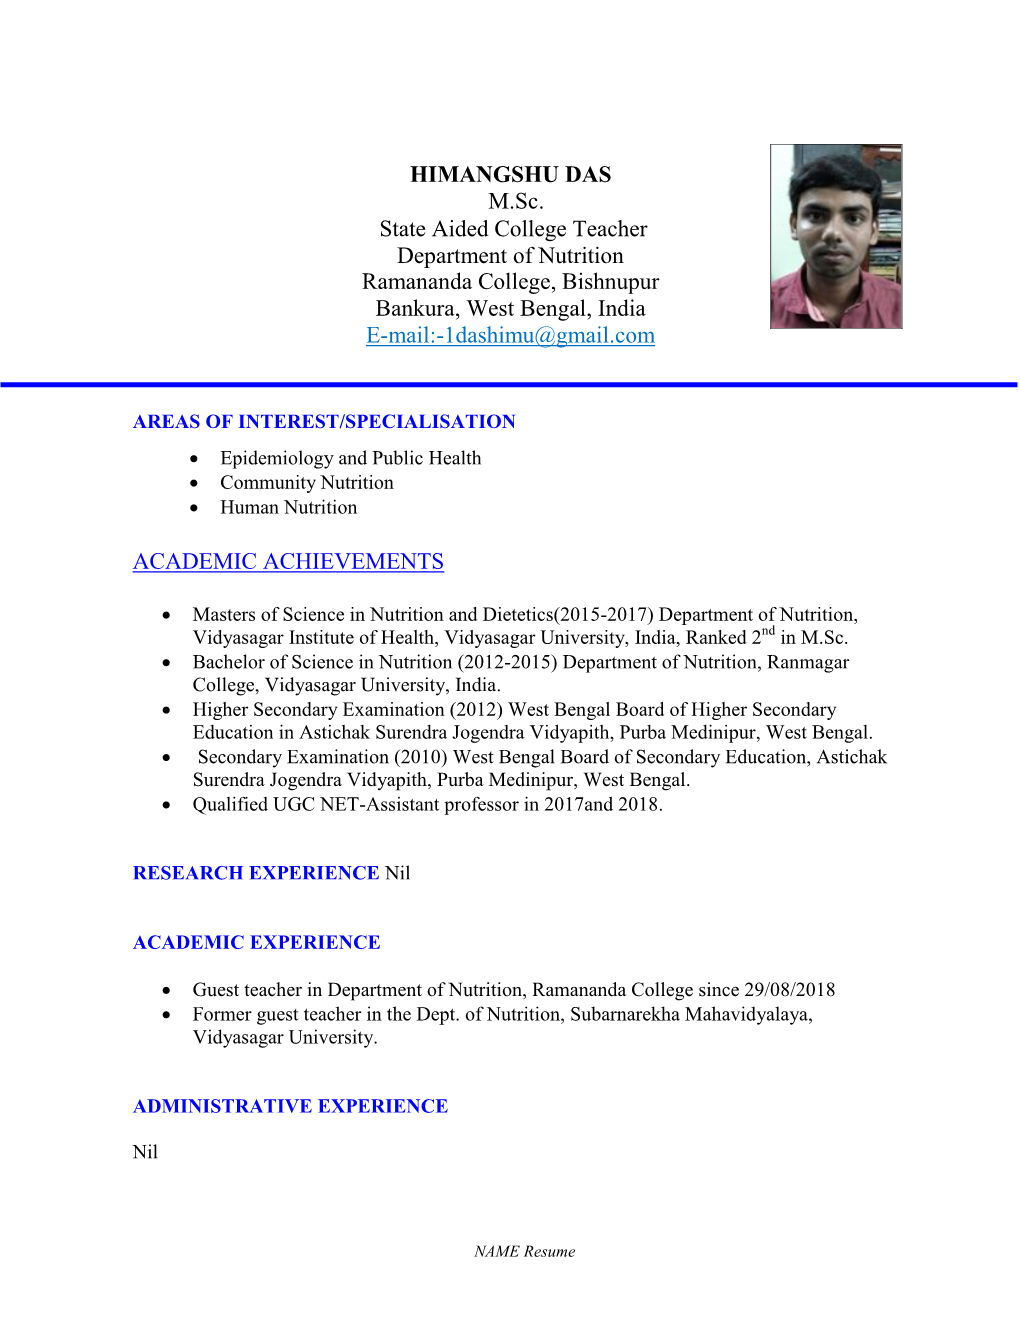 Ramananda College, Bishnupur Bankura, West Bengal, India E-Mail